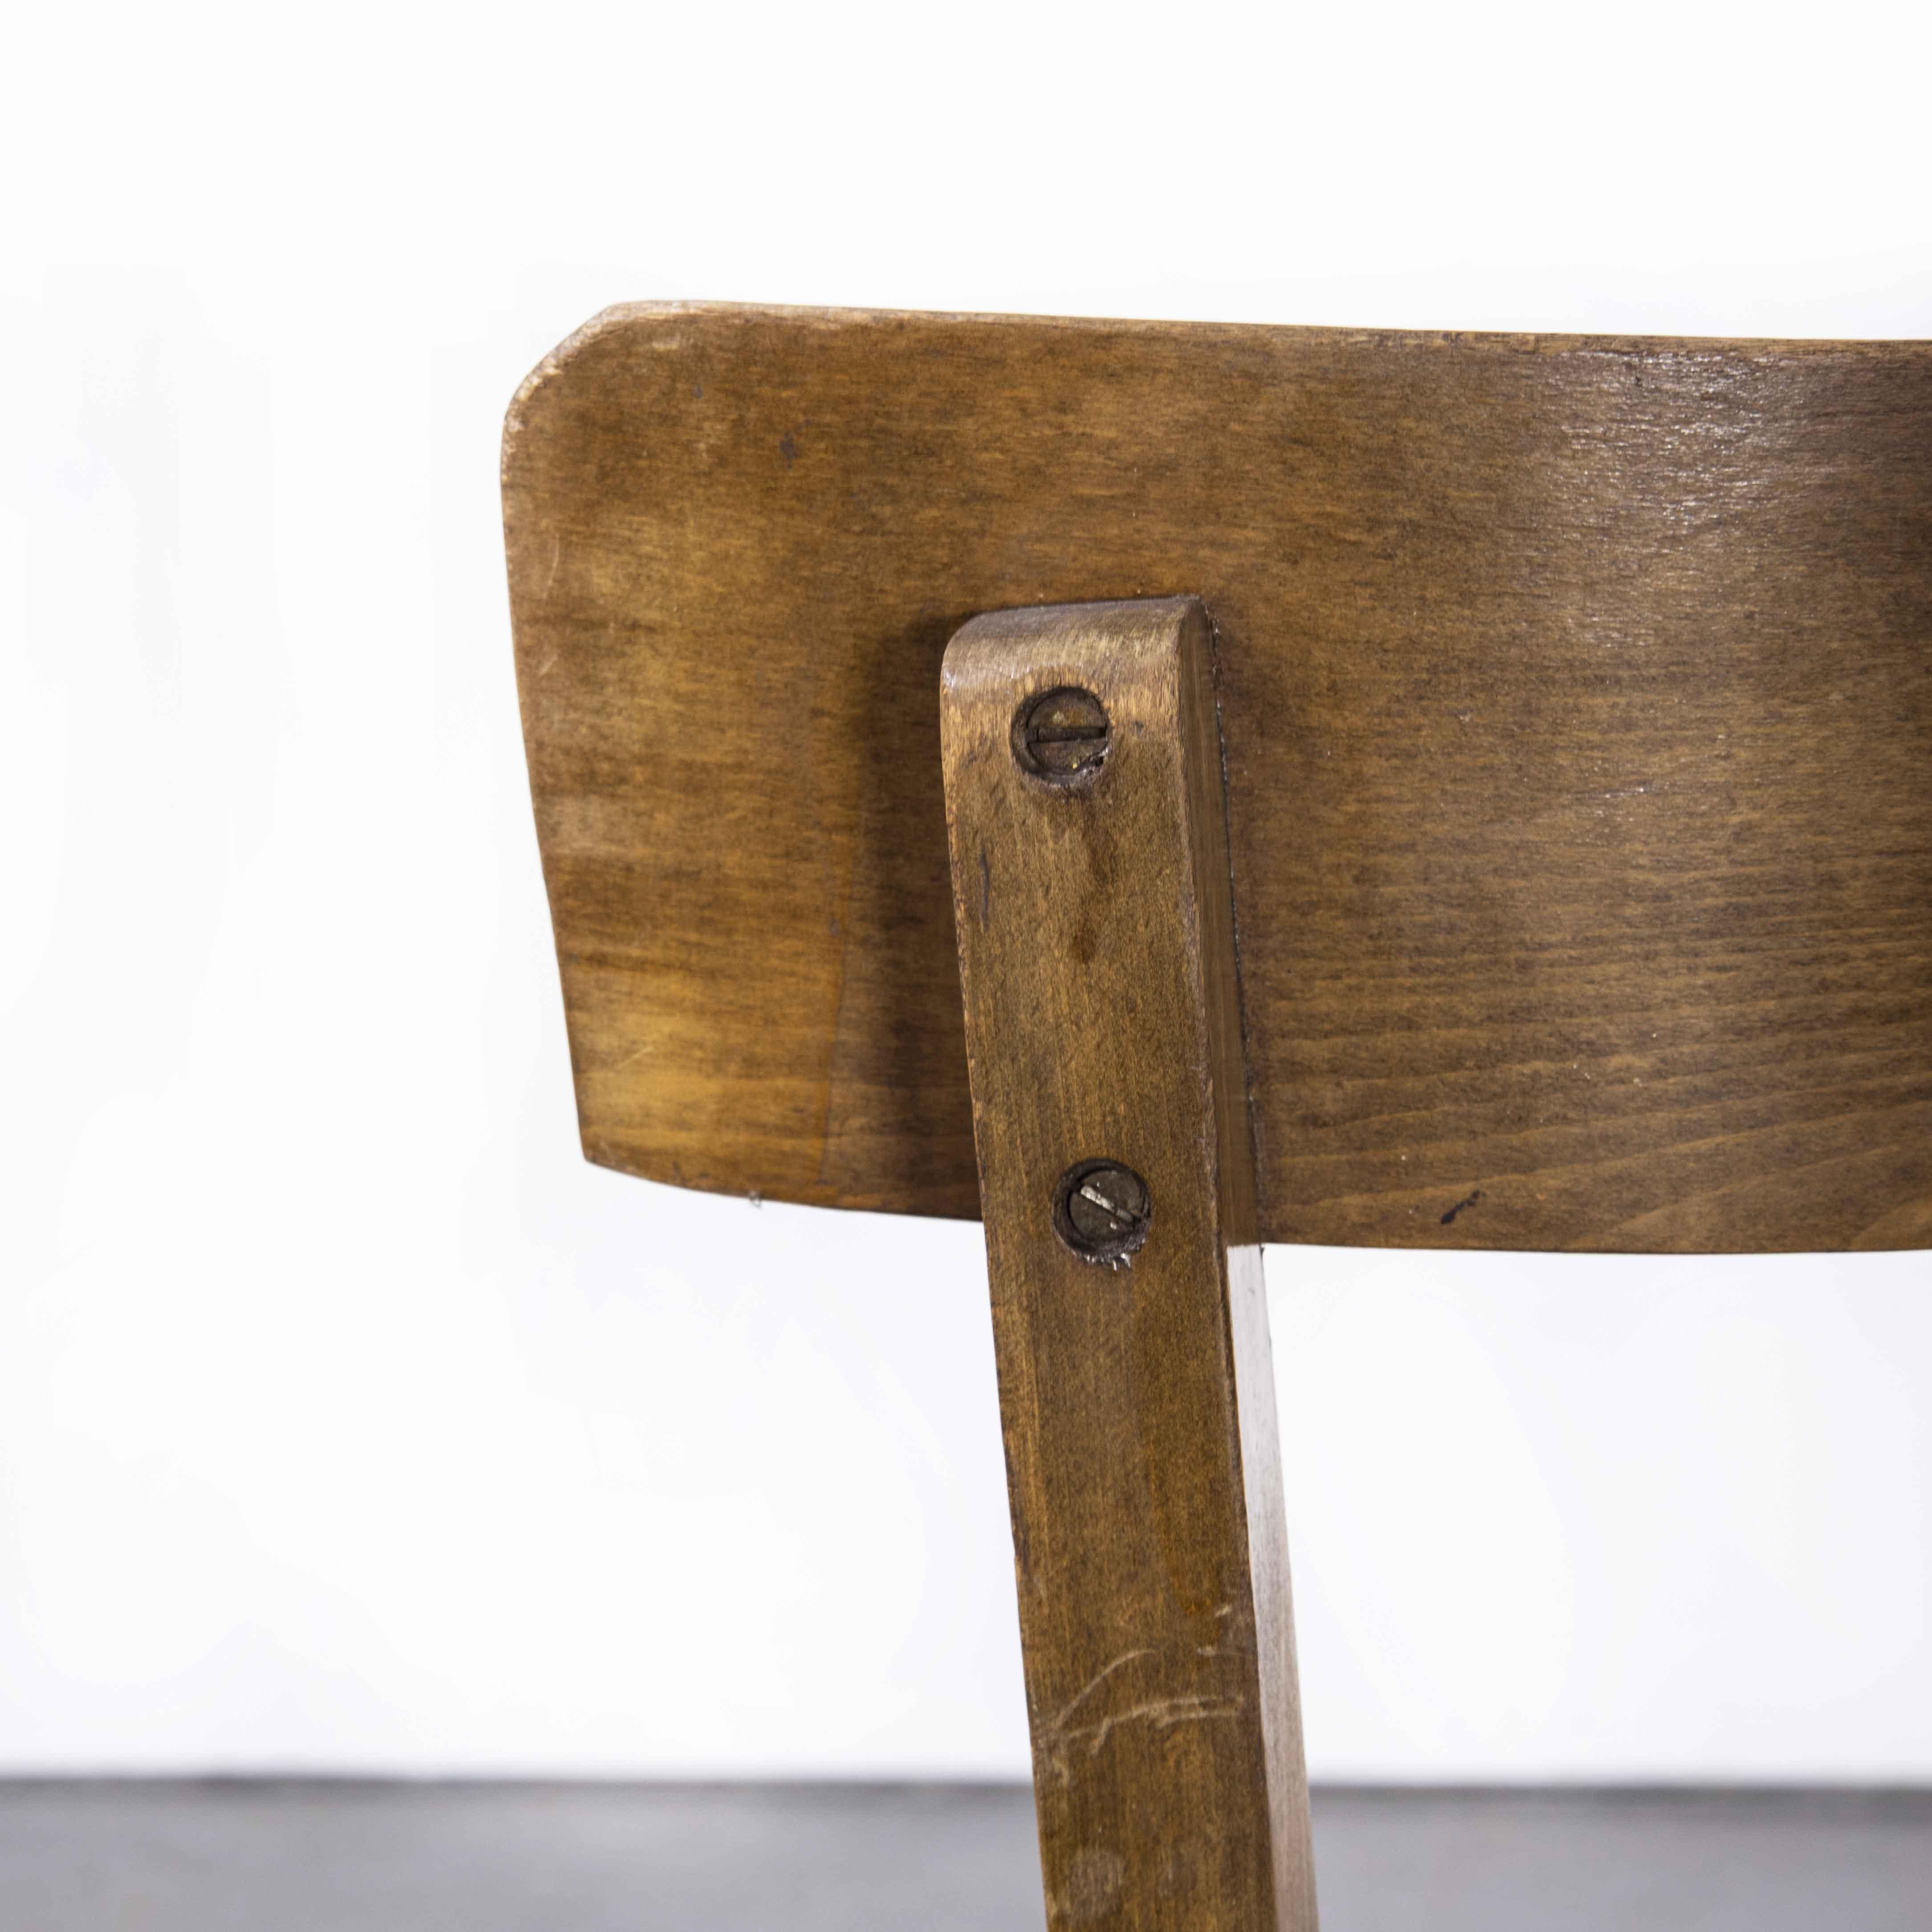 1950’s Baumann Bentwood Bistro dining chair – Single bar back – Set of eight (Model 1359)

1950’s Baumann Bentwood Bistro dining chair – Single bar back – Set of eight. Classic Beech bistro chair made in France by the maker Baumann. Baumann is a